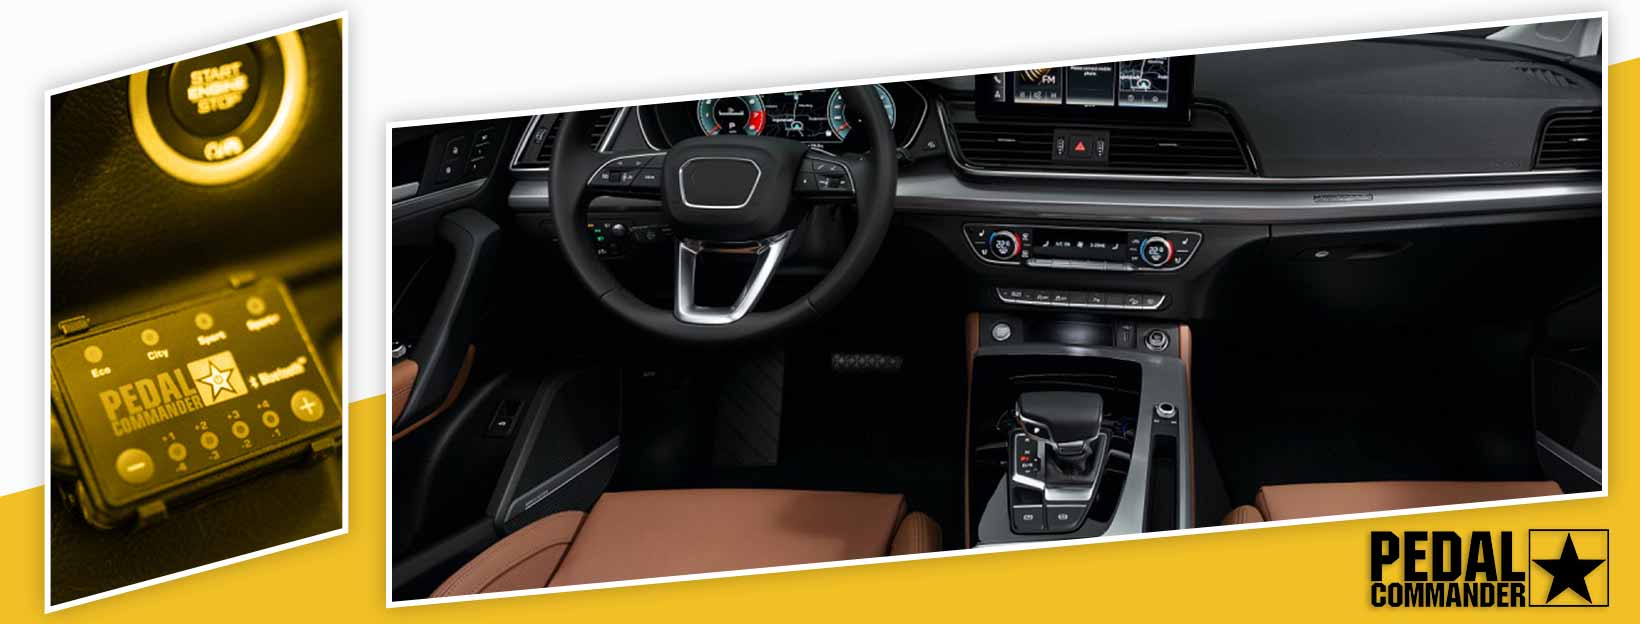 Pedal Commander for Audi Q5 - interior